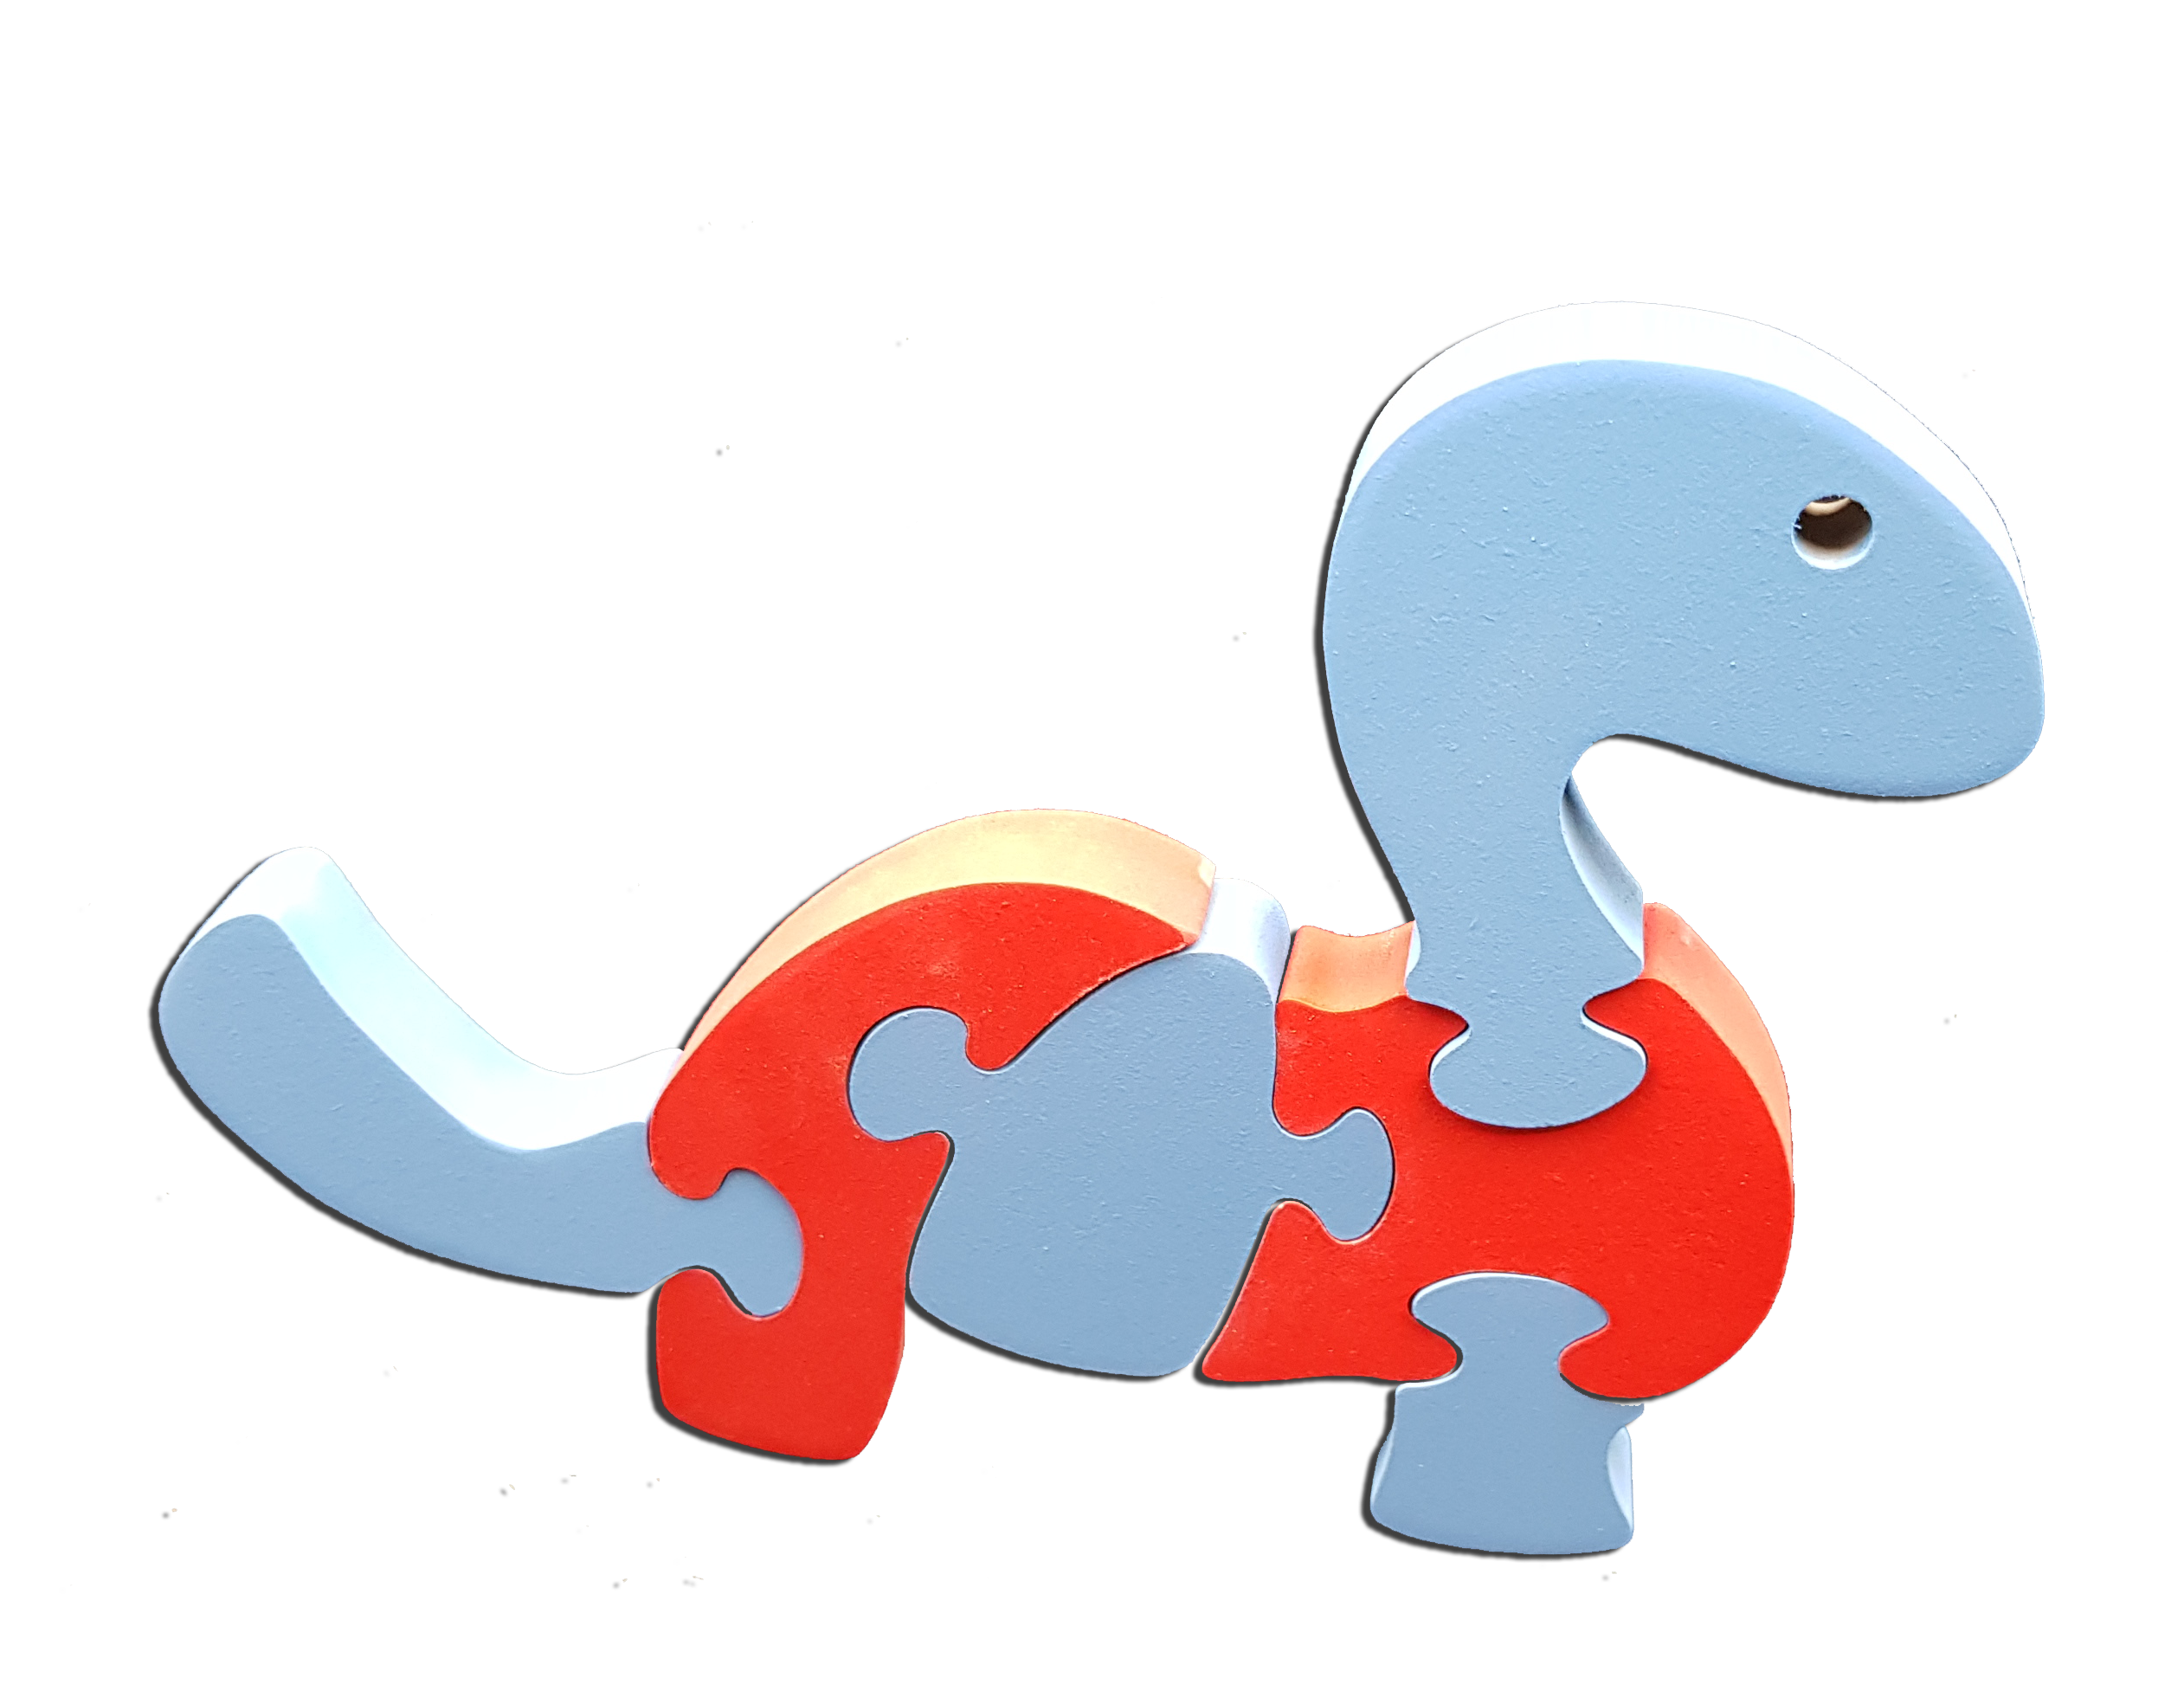 Puzzle 3D éducatif et ludique Kikou "le dinosaure"